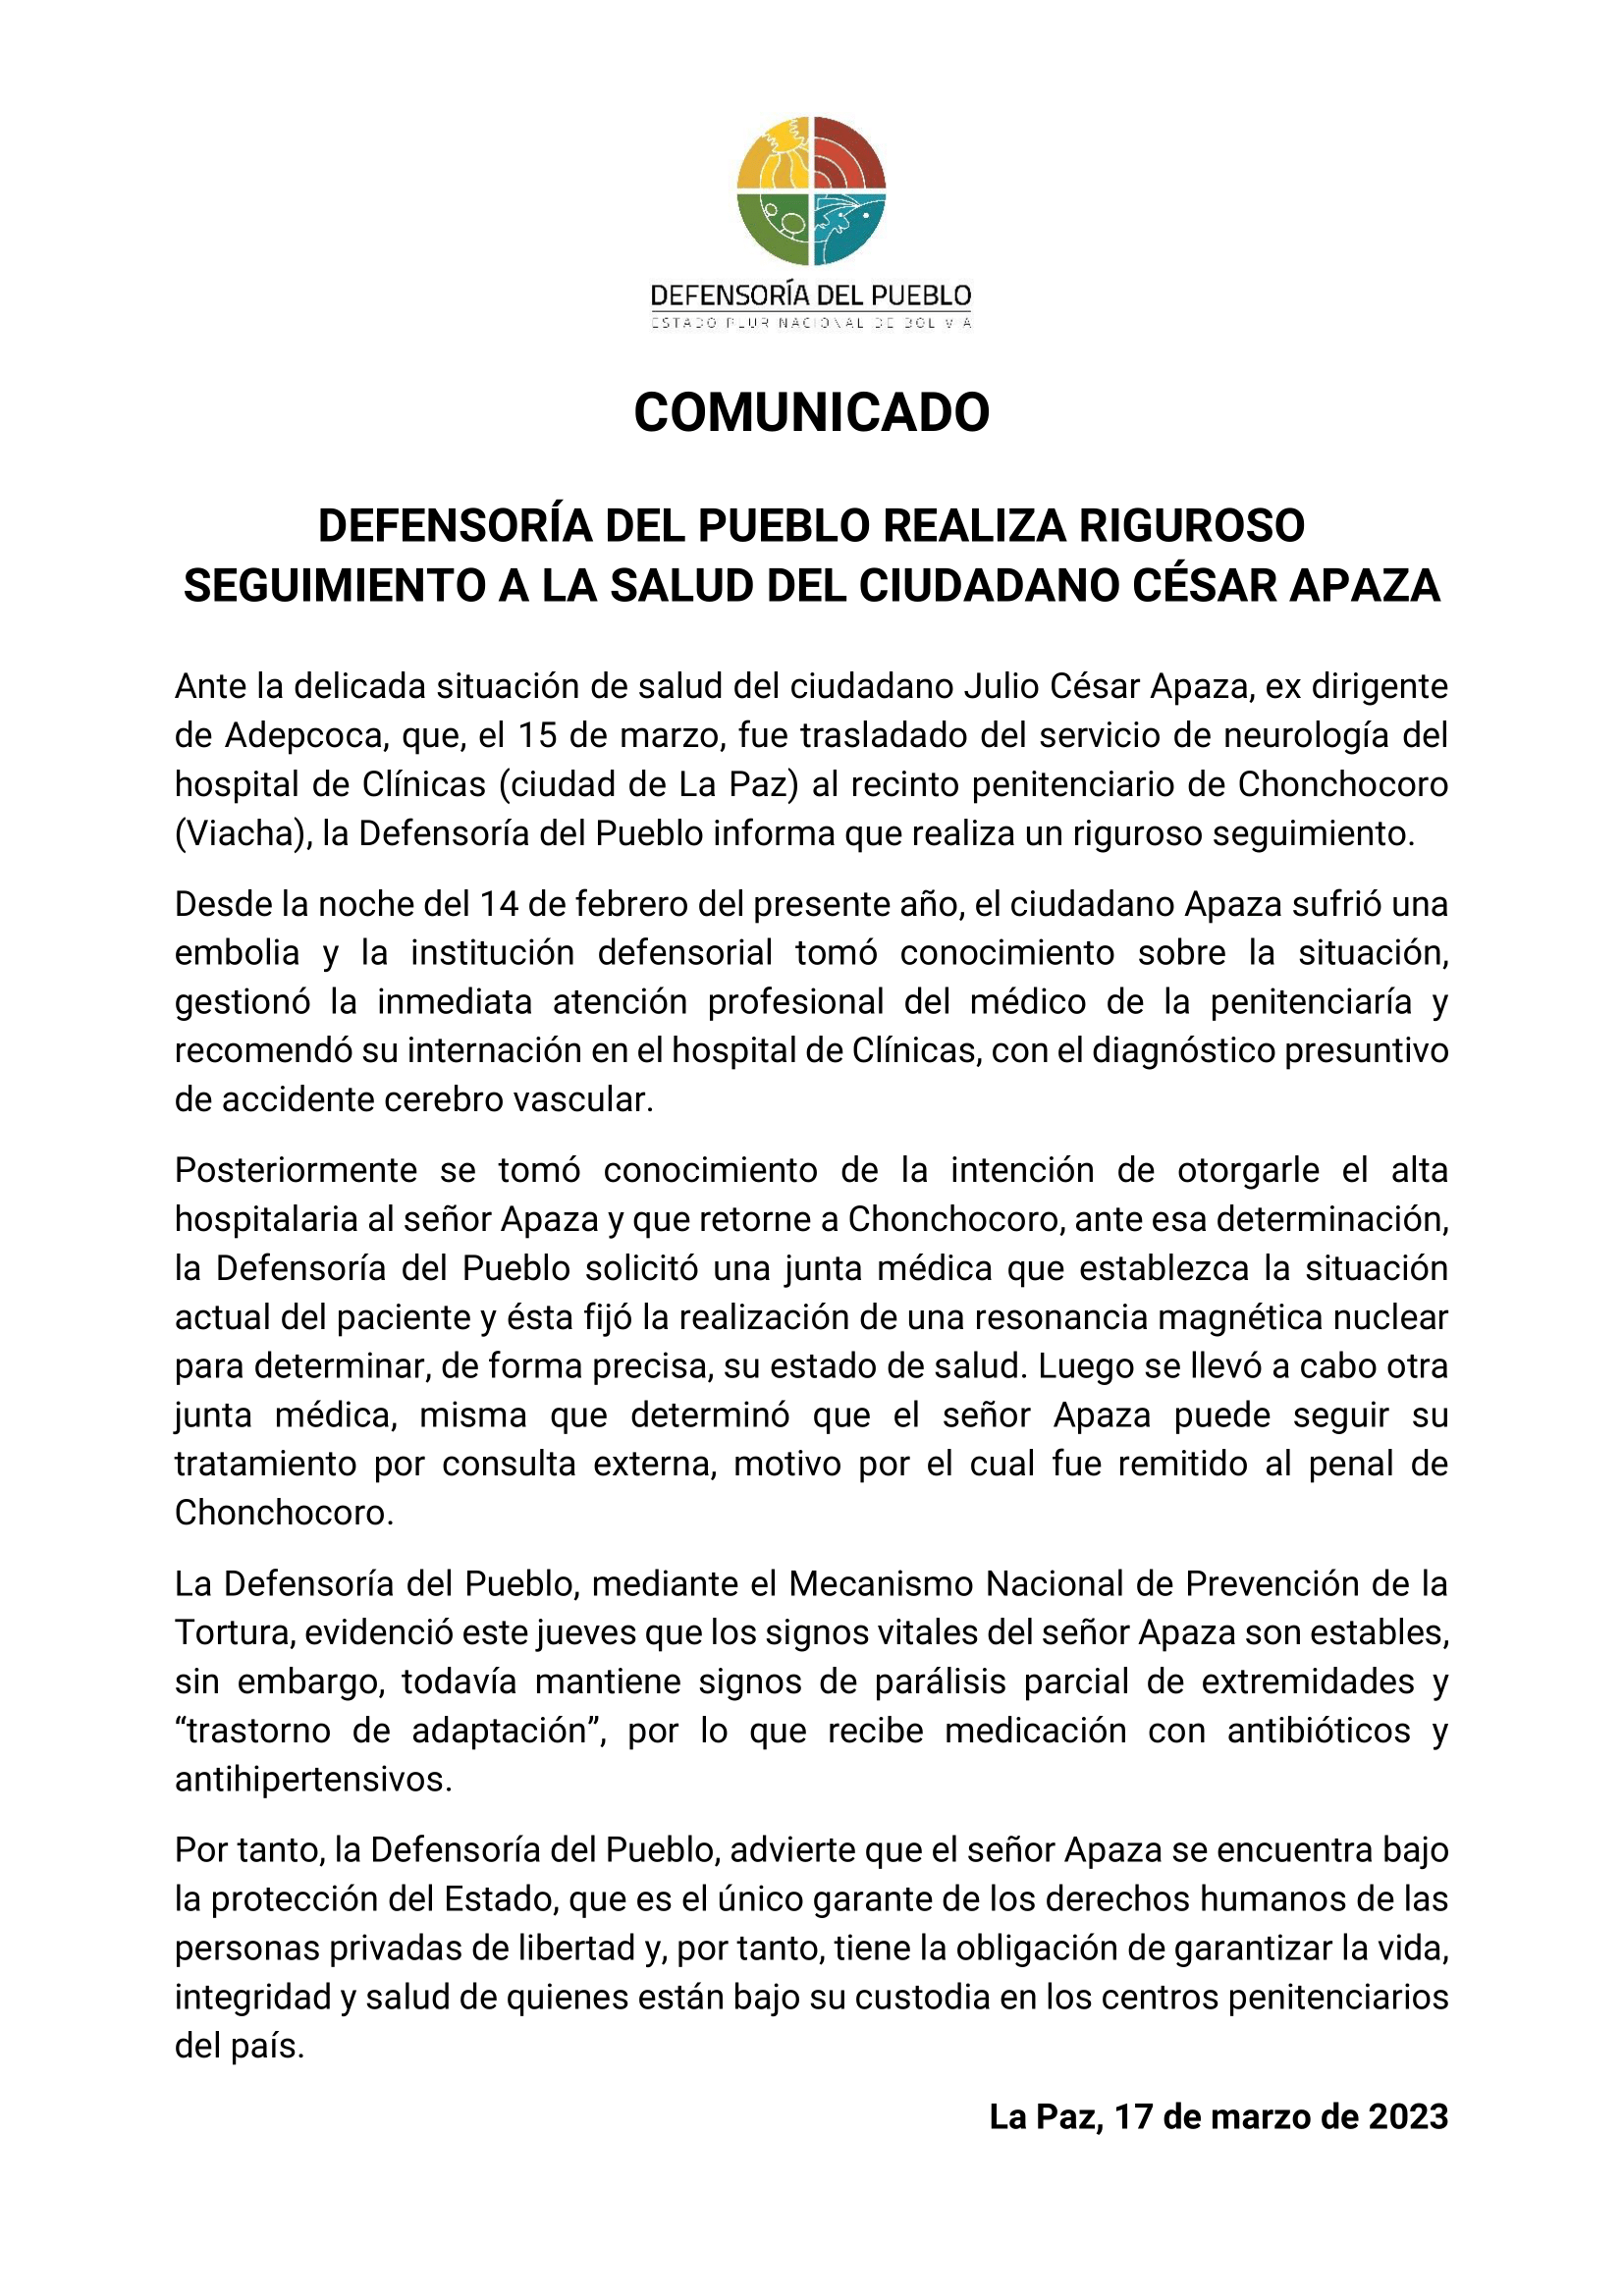 DEFENSORÍA DEL PUEBLO REALIZA RIGUROSO SEGUIMIENTO A LA SALUD DEL CIUDADANO CÉSAR APAZA